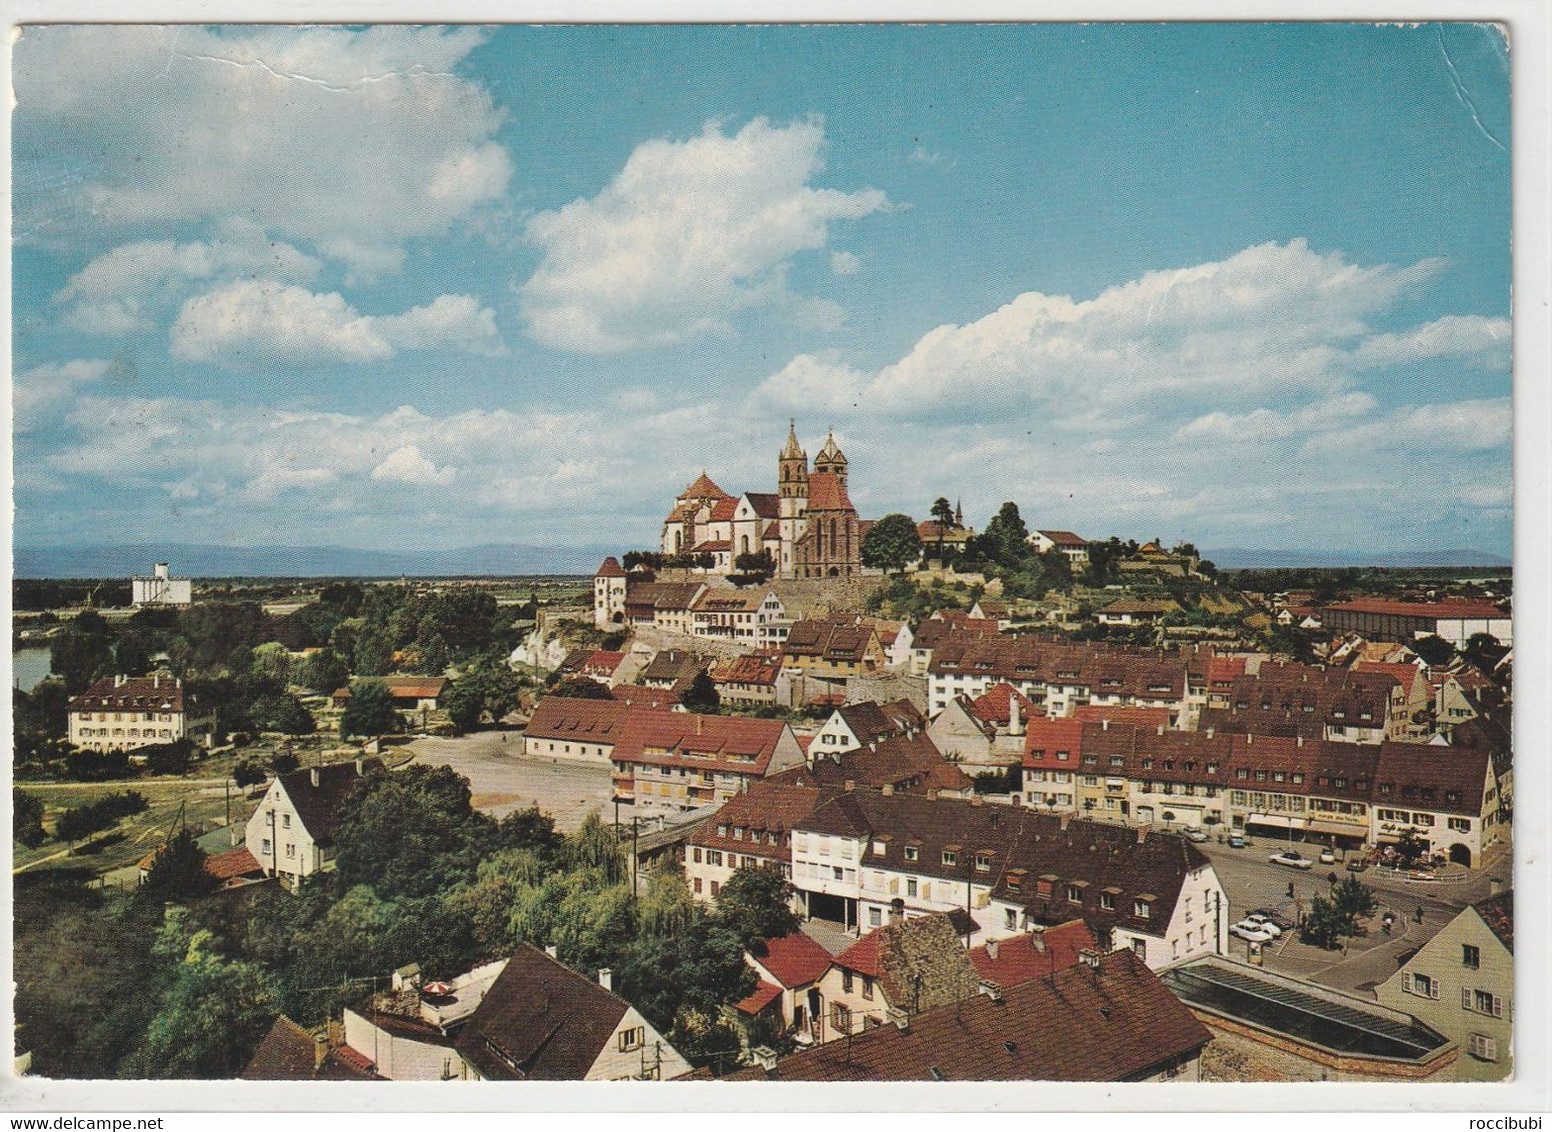 Breisach, Baden-Württemberg - Breisach